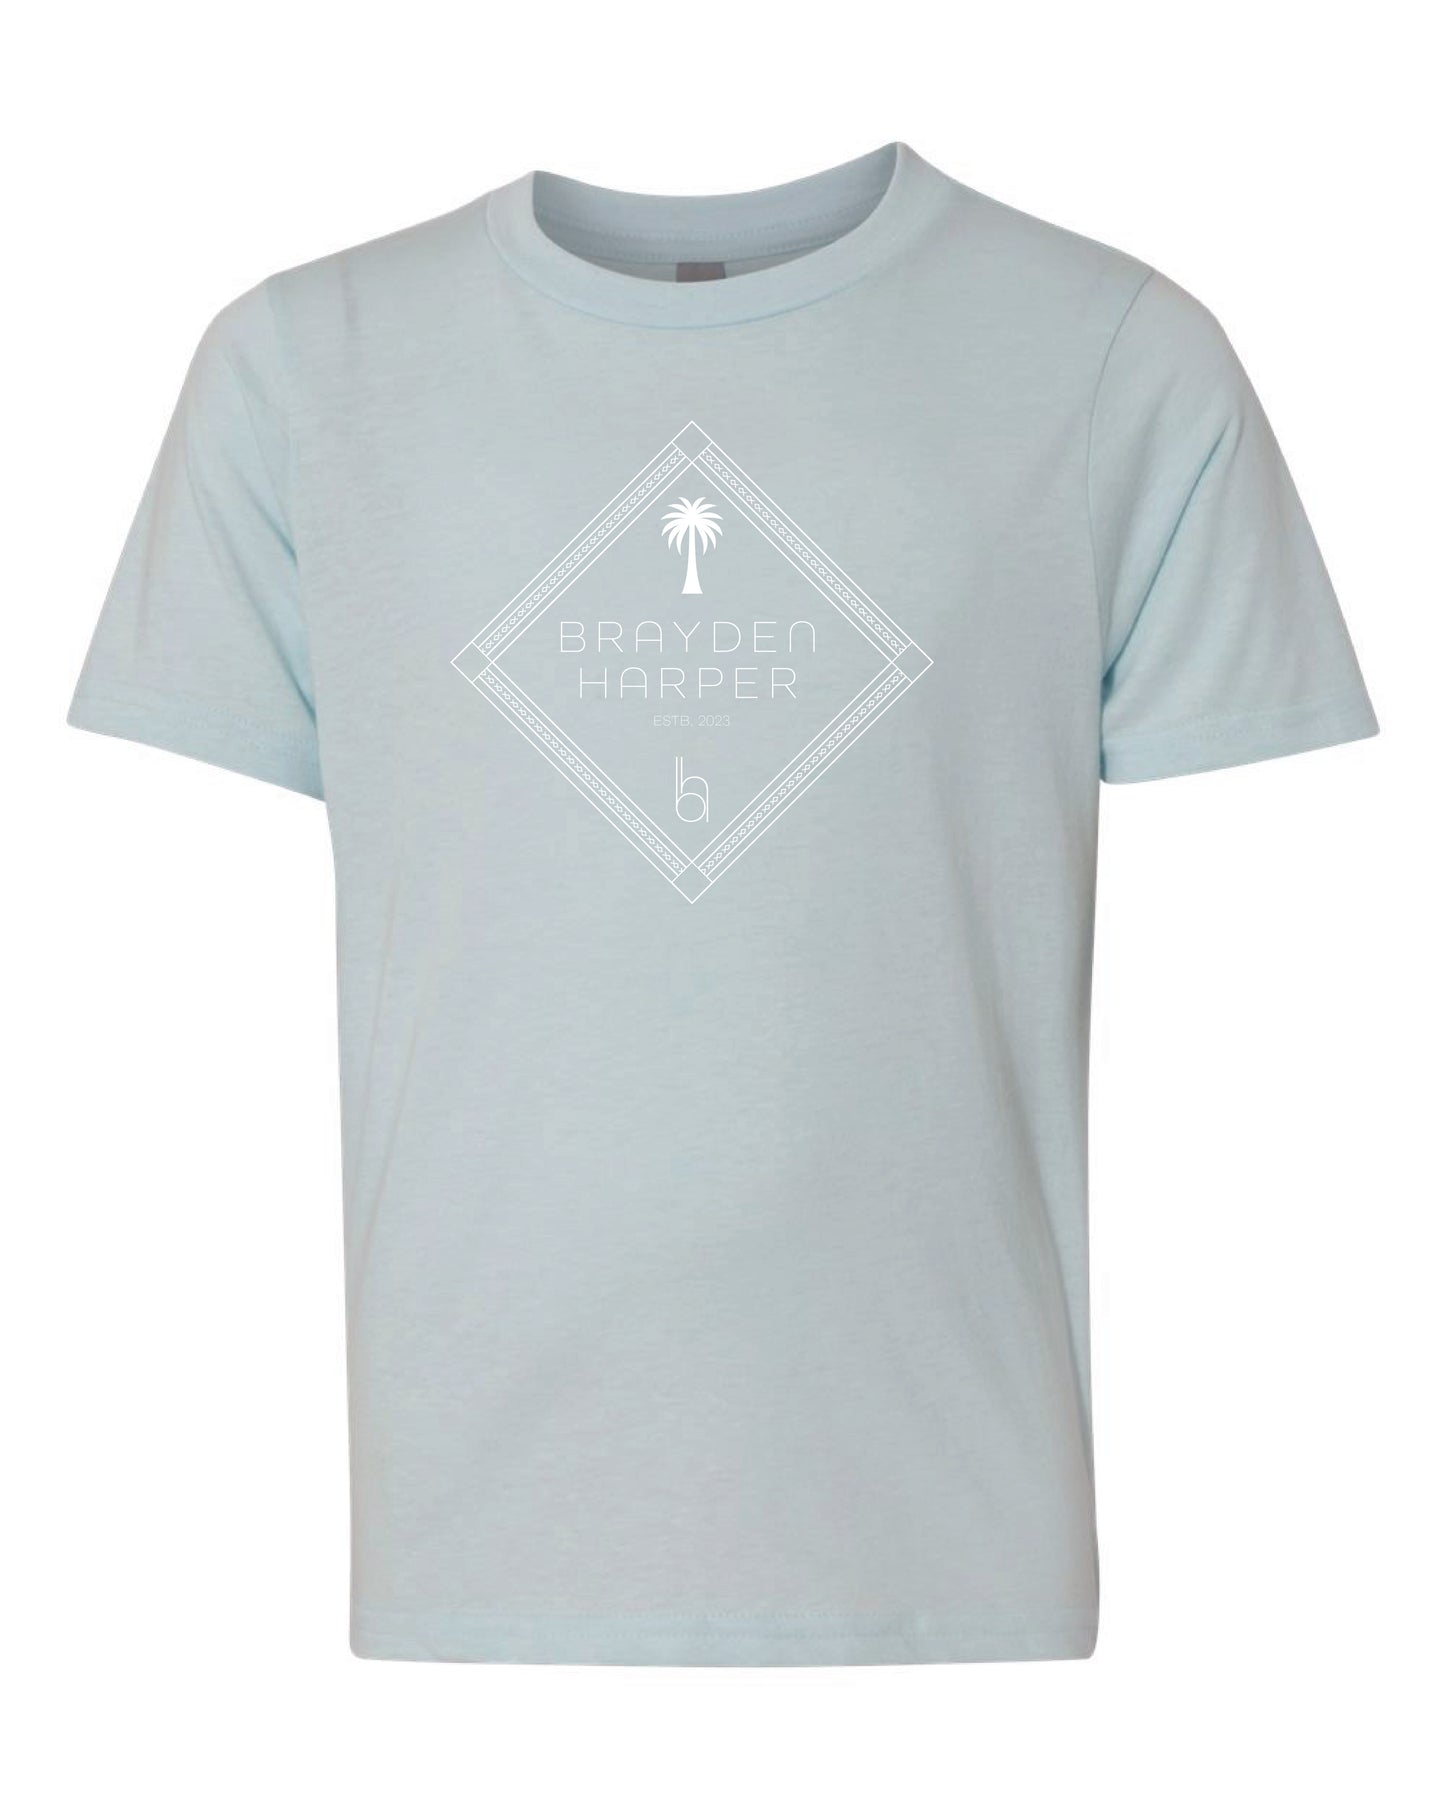 Diamond Palm T-Shirt - Youth